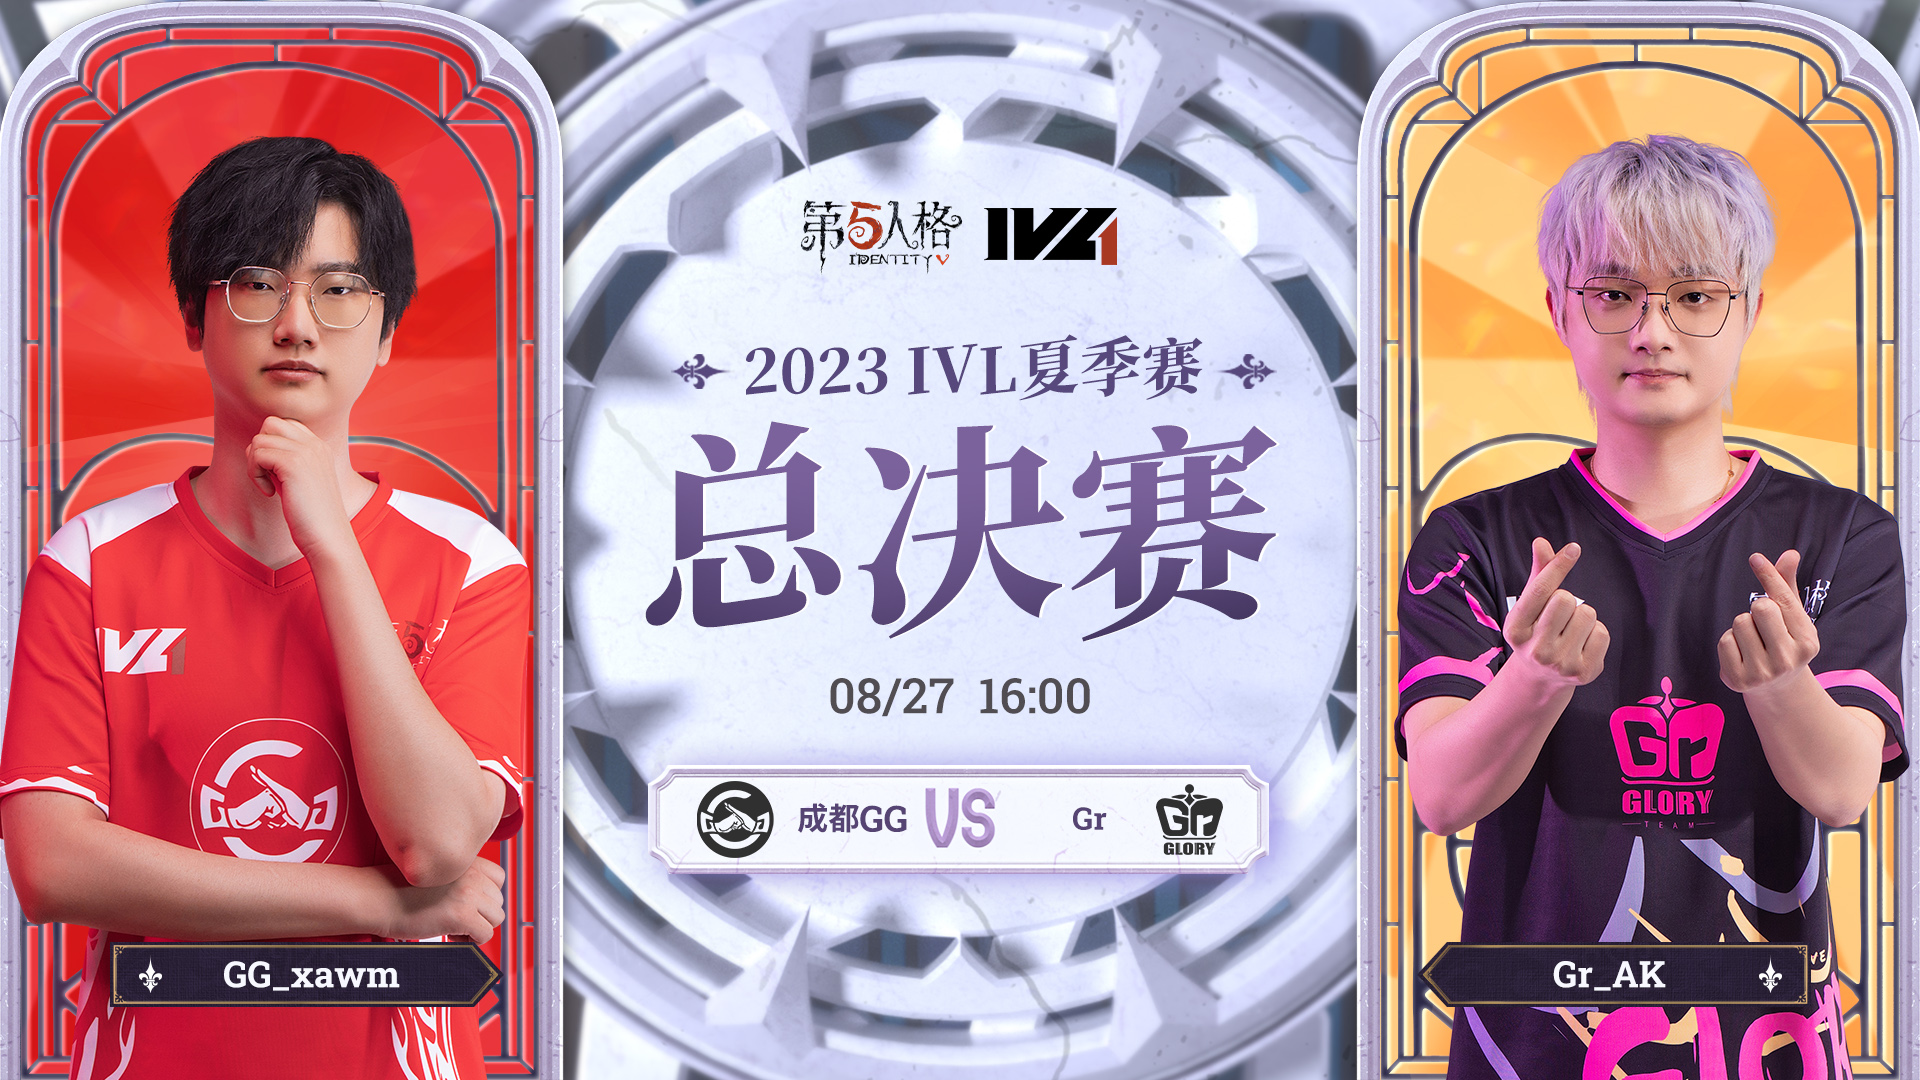 【2023IVL】夏季赛总决赛录像Day4 成都GG vs Gr